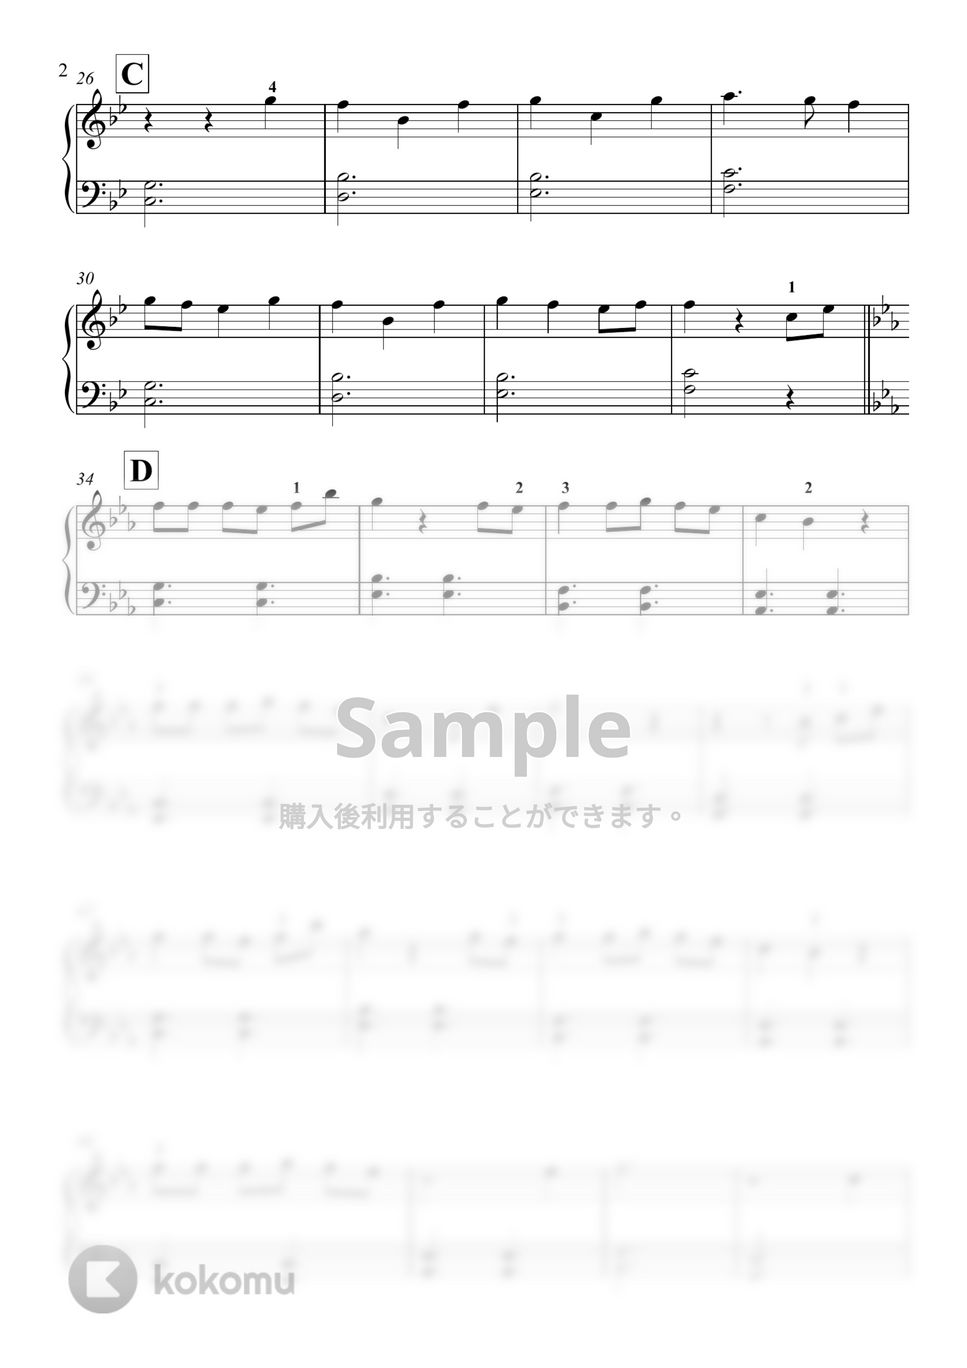 セシル・コルベル - Arrietty’s Song by 新本和正